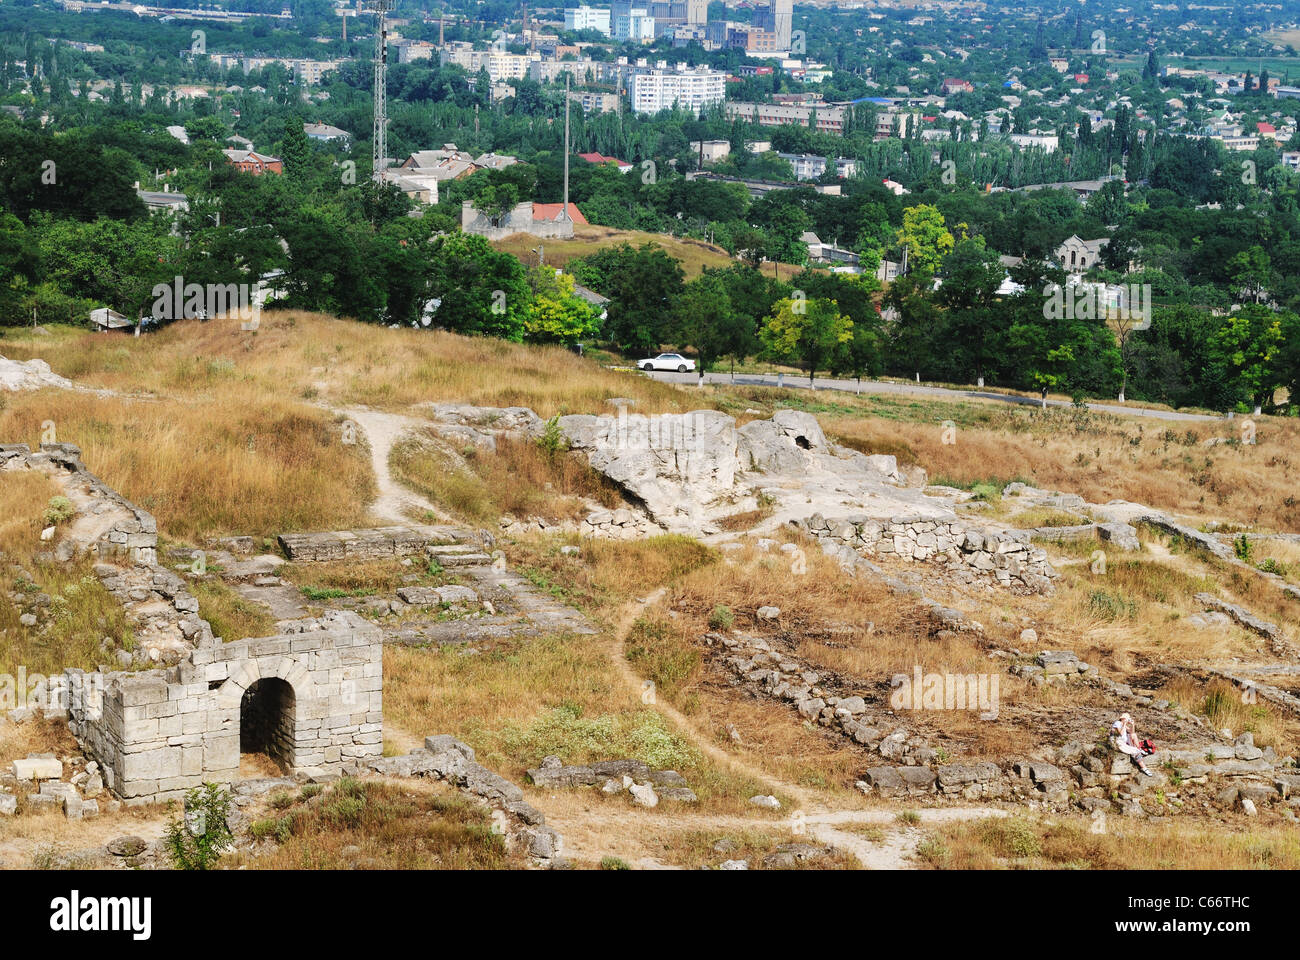 Ruins of ancient settlement Panticapaeum. 6th century BC. Kerch, Crimea, Ukraine Stock Photo